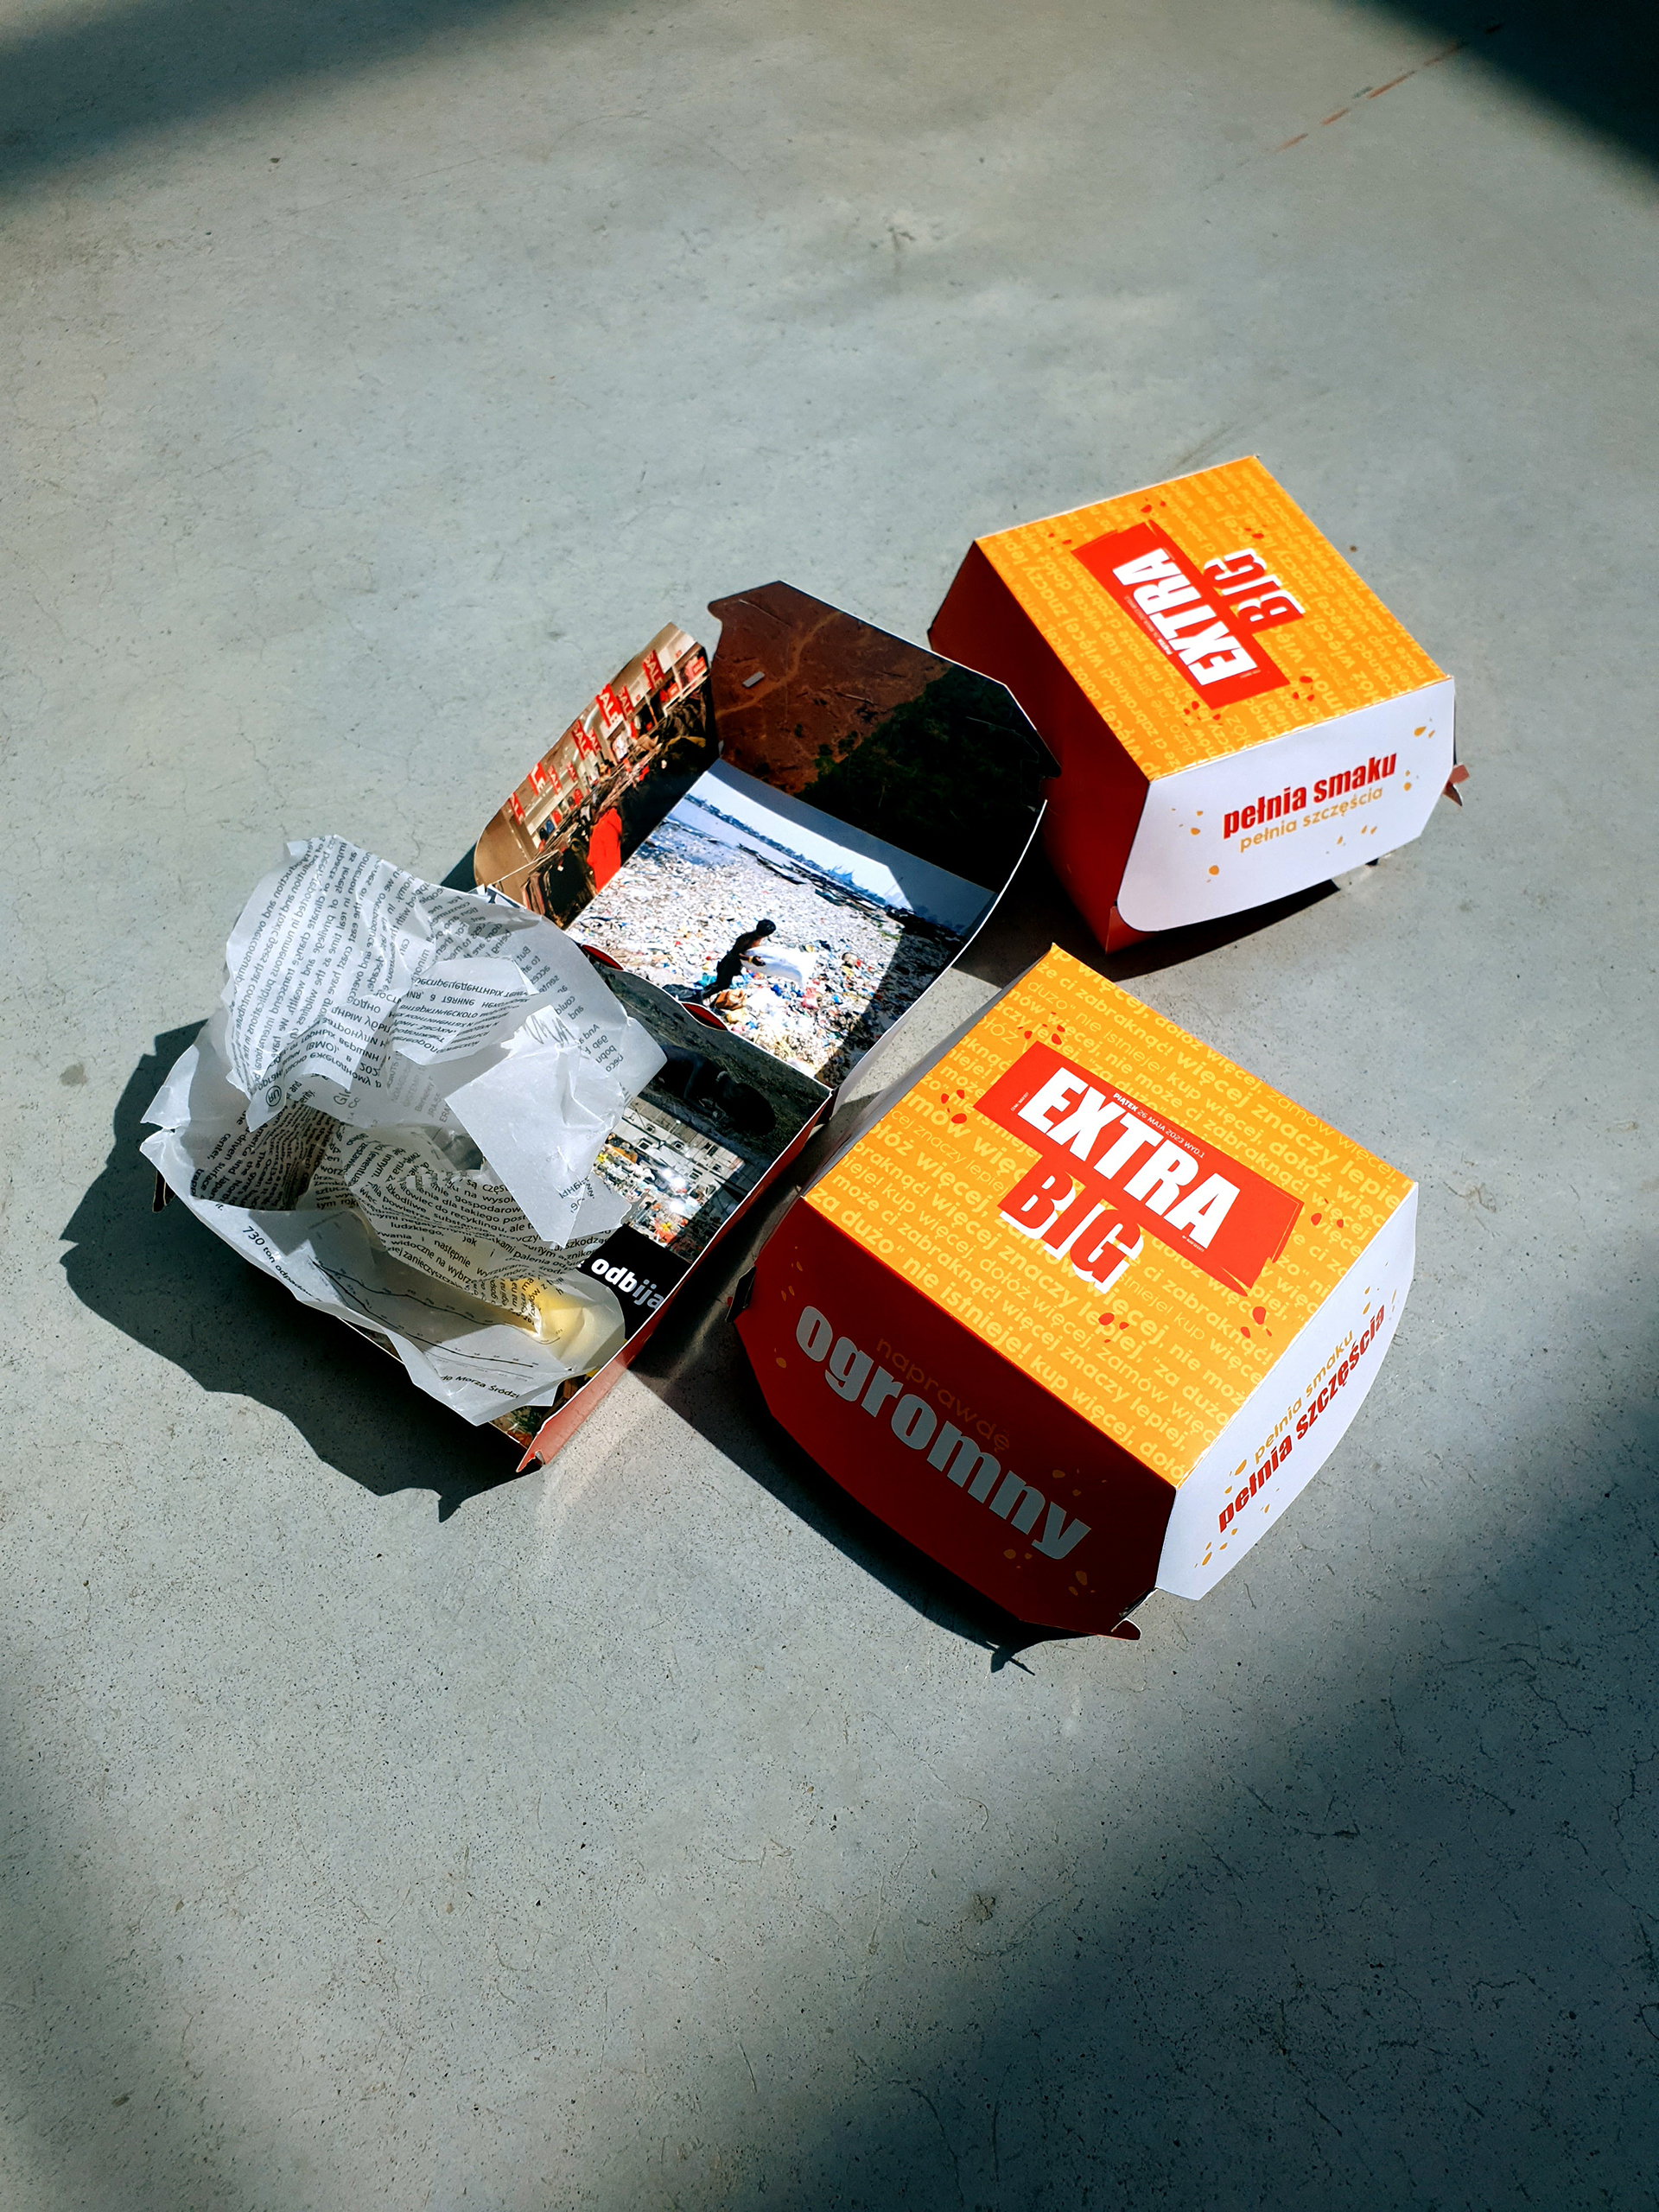 Fotografia przedstawia trzy opakowania do hamburgerów z napisem EXTRA BIG leżące na betonowej podłodze, jedno jest otwarte i znajduje się w nim zmięty papier